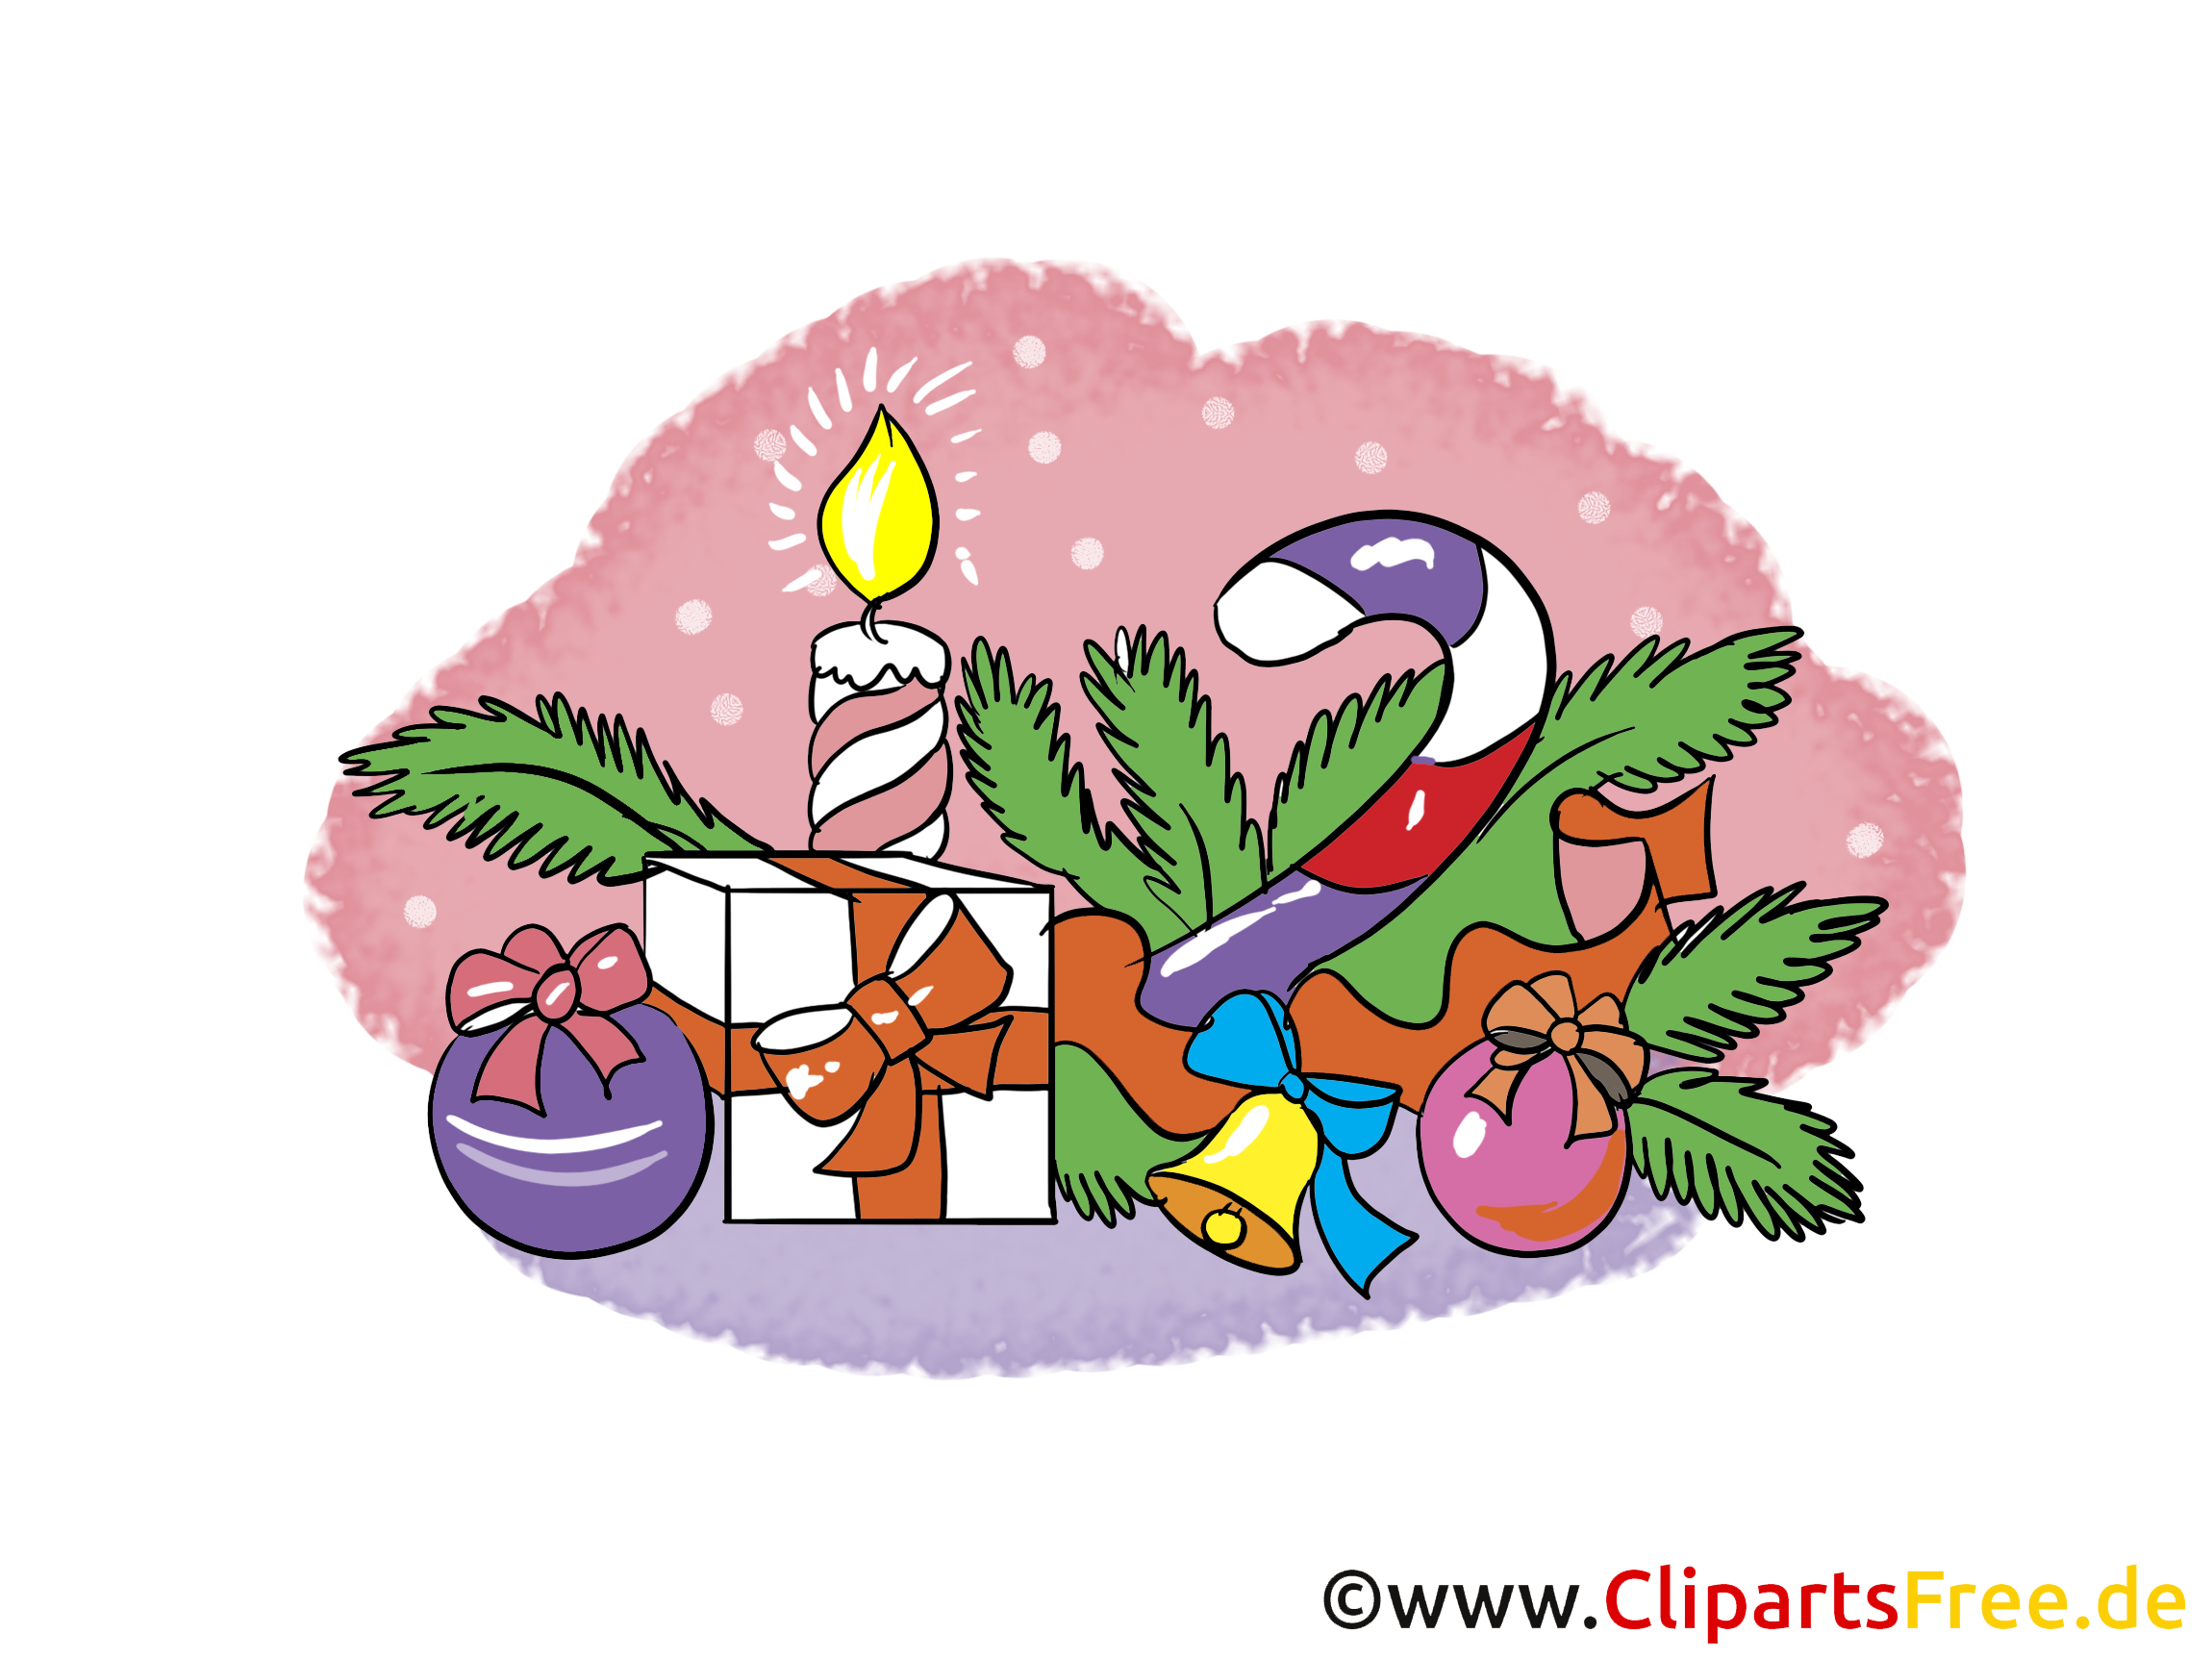 Free Cliparts Zu Silvester Und Weihnachten verwandt mit Clipart Kostenlos Weihnachten